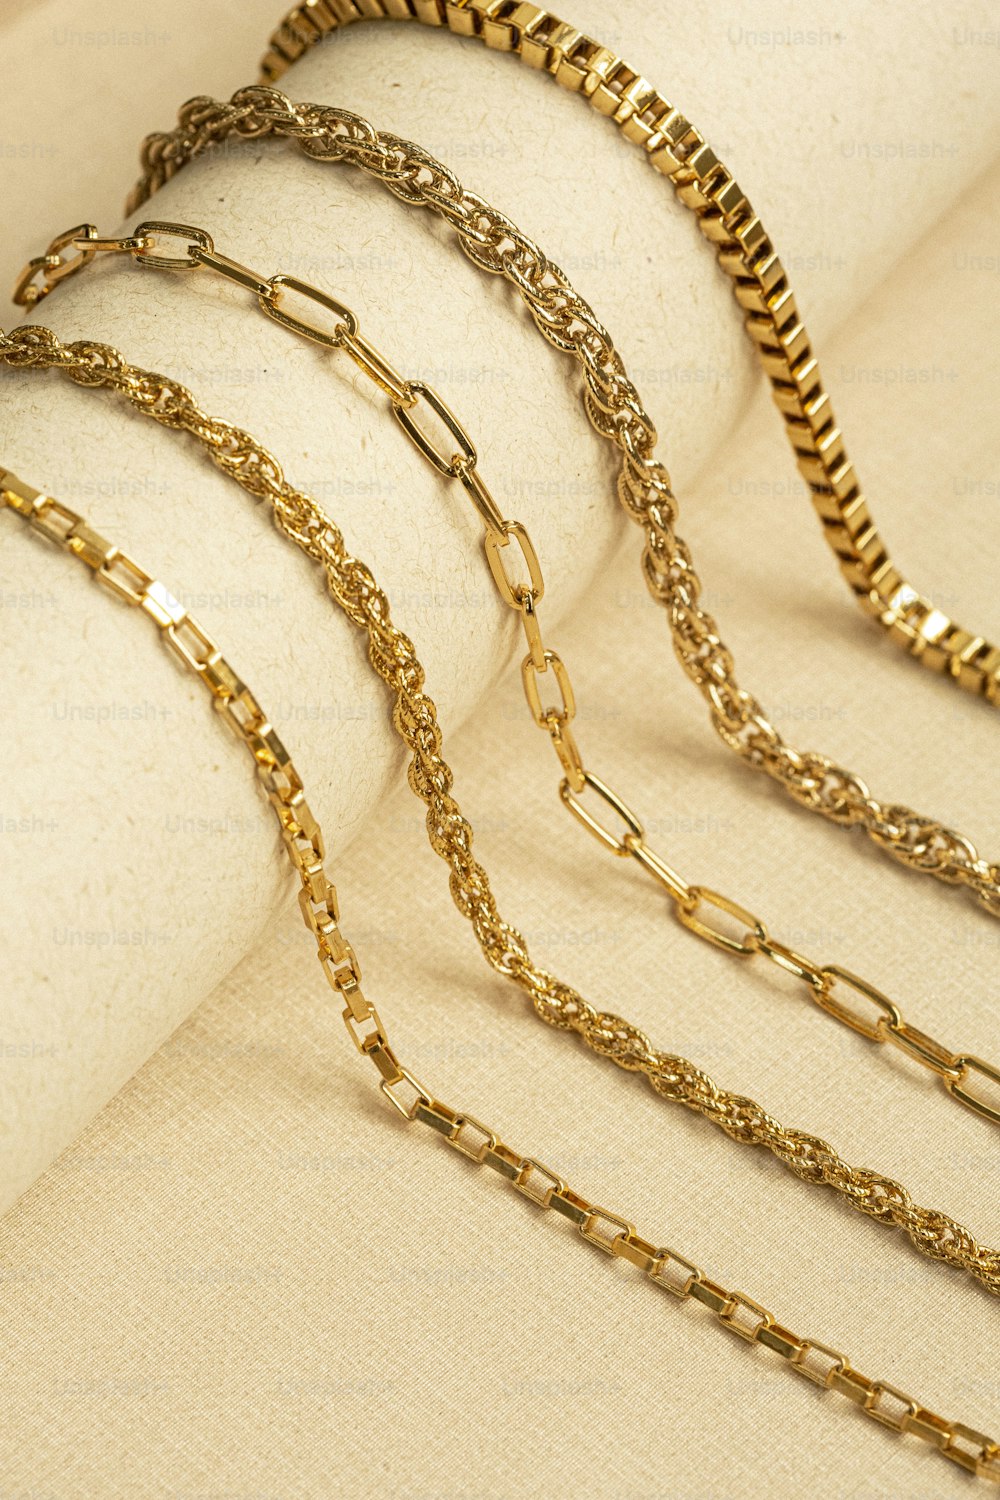 テーブルの上に置かれた金の鎖の束